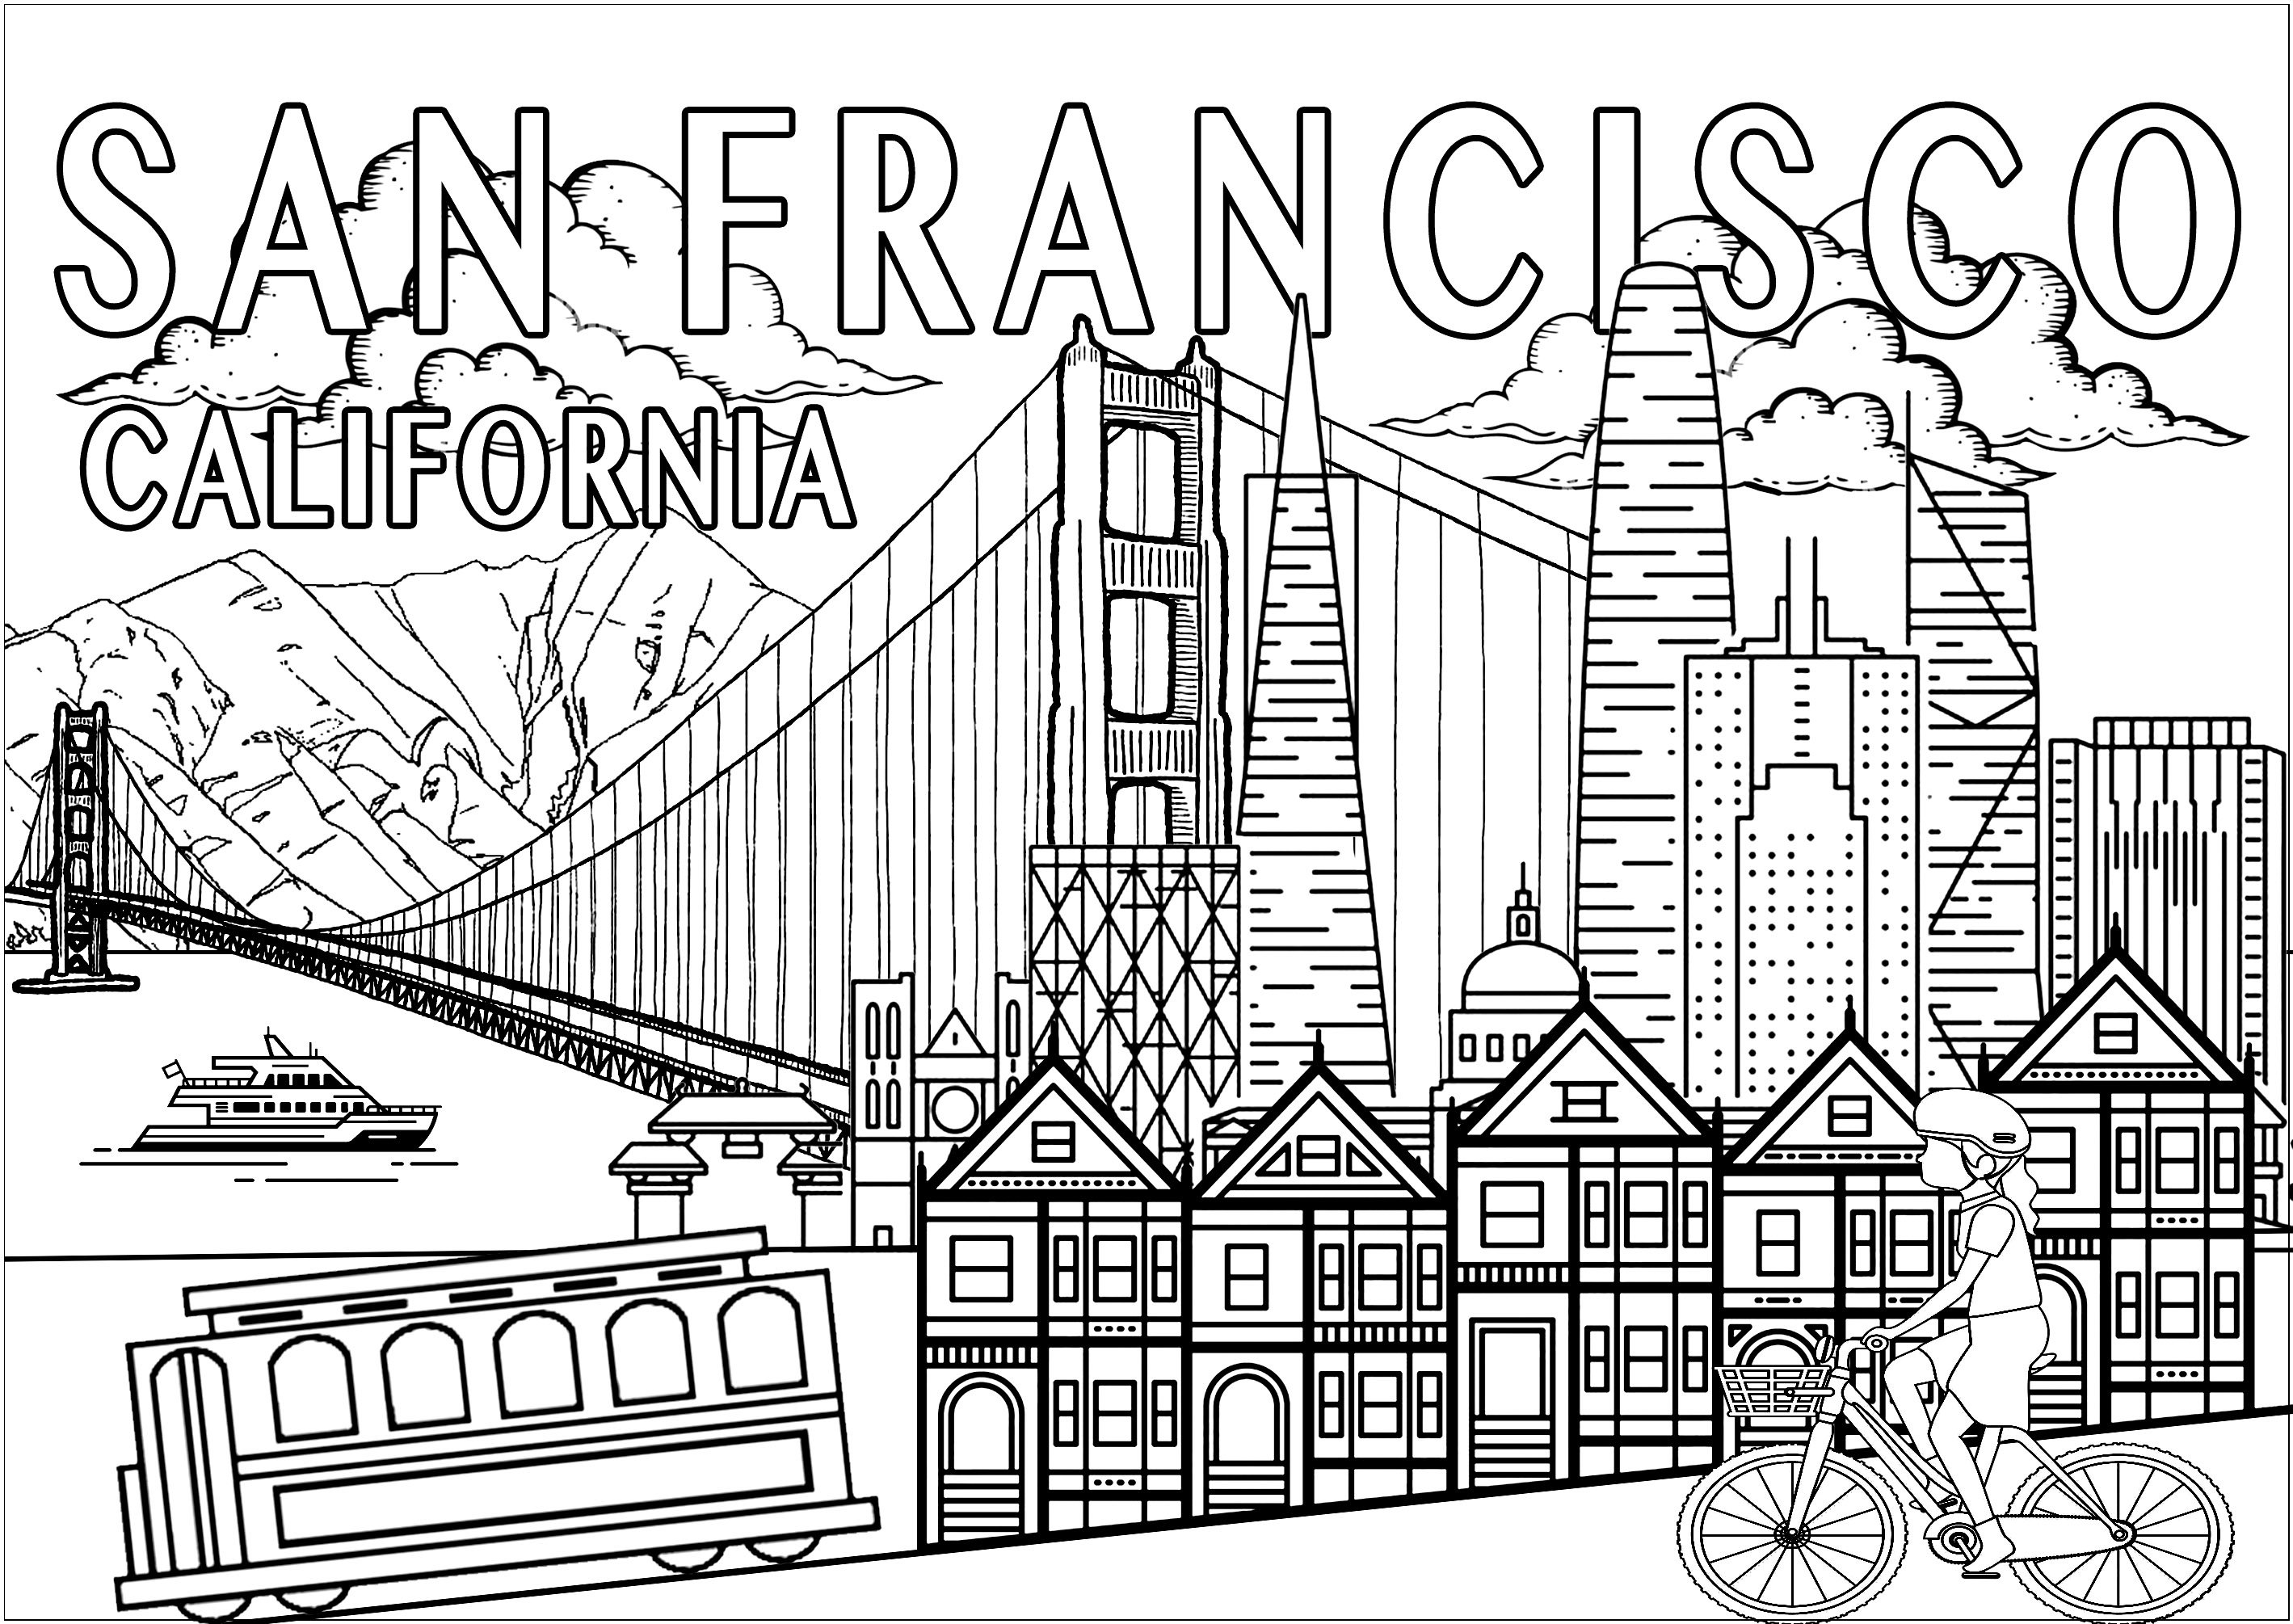 Coloriez les principaux monuments et symboles de San Francisco ! Le Golden Gate, Les Painted ladies, le Tramway, la Skyline avec notamment la Coit Tower ... San Francisco, la « Cité de la Baie », est l'une des villes des États-Unis les plus emblématiques. À visiter absolument lors d'un voyage en Californie !